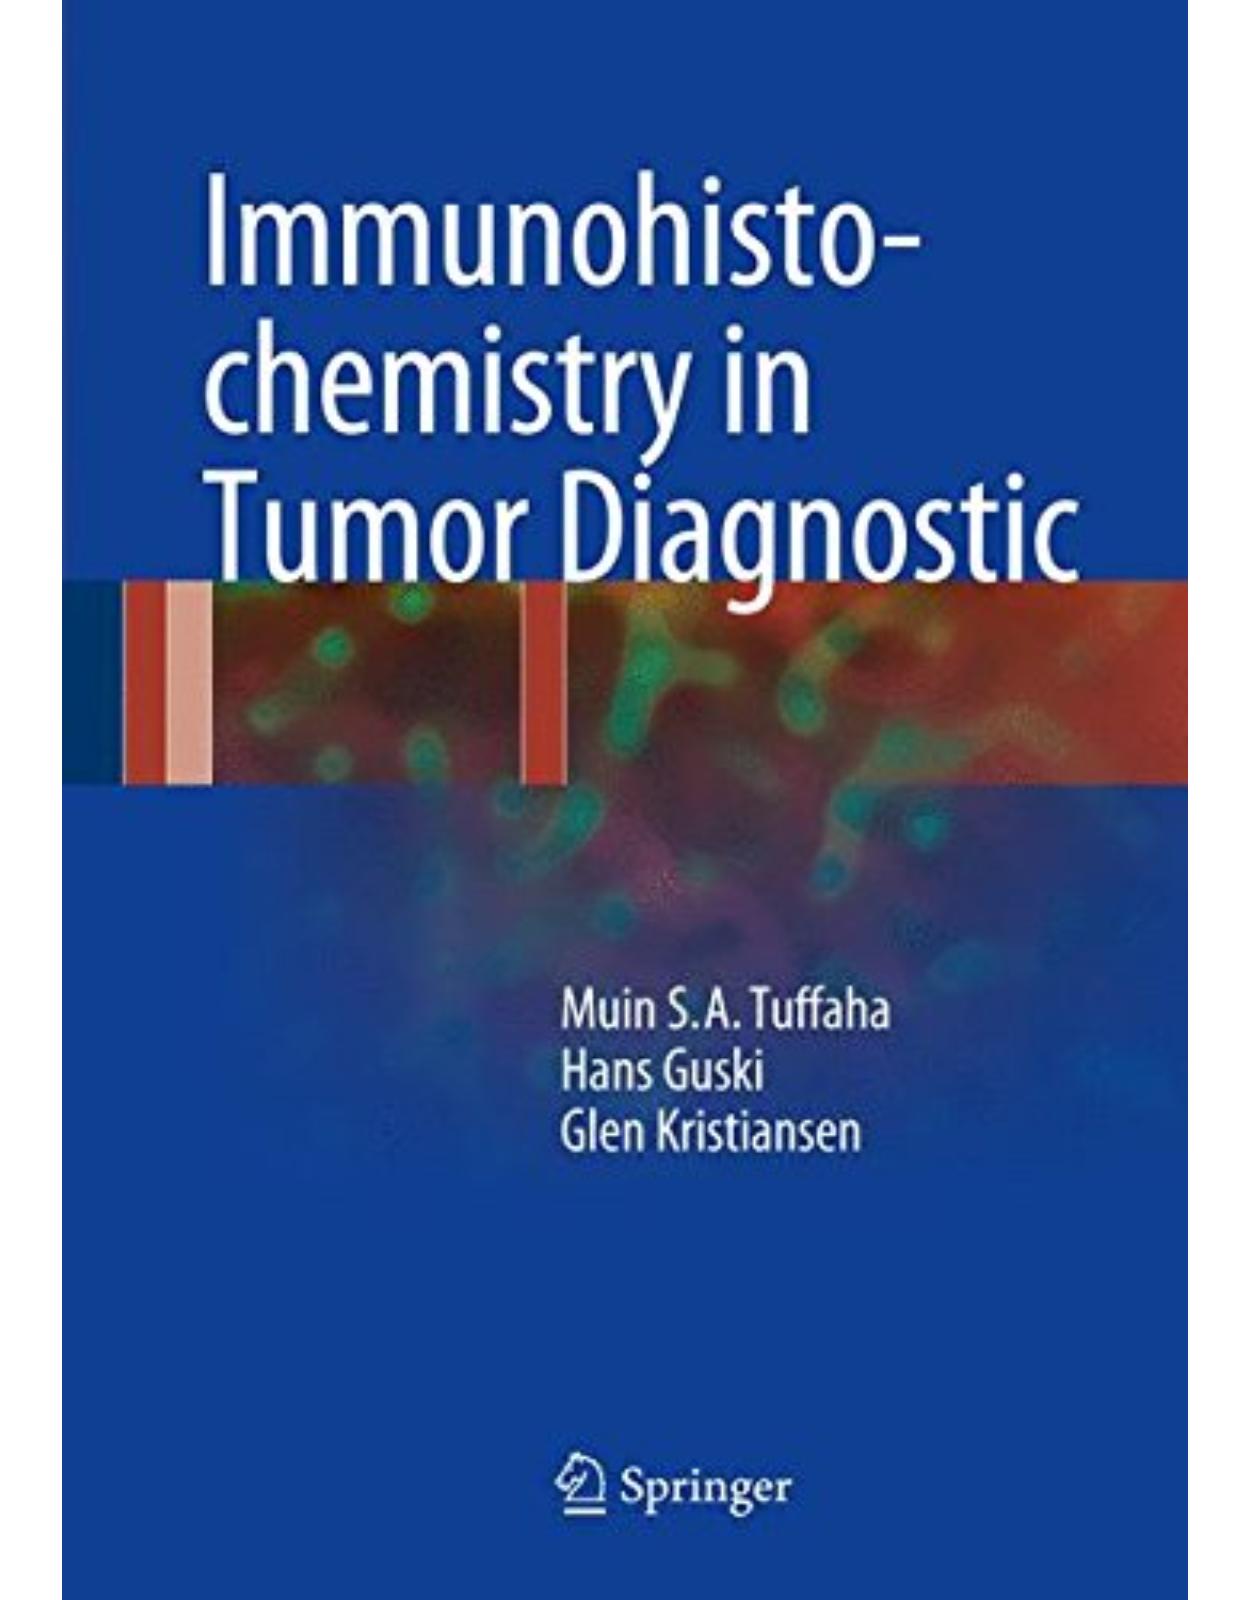 Immunohistochemistry in Tumor Diagnostics 